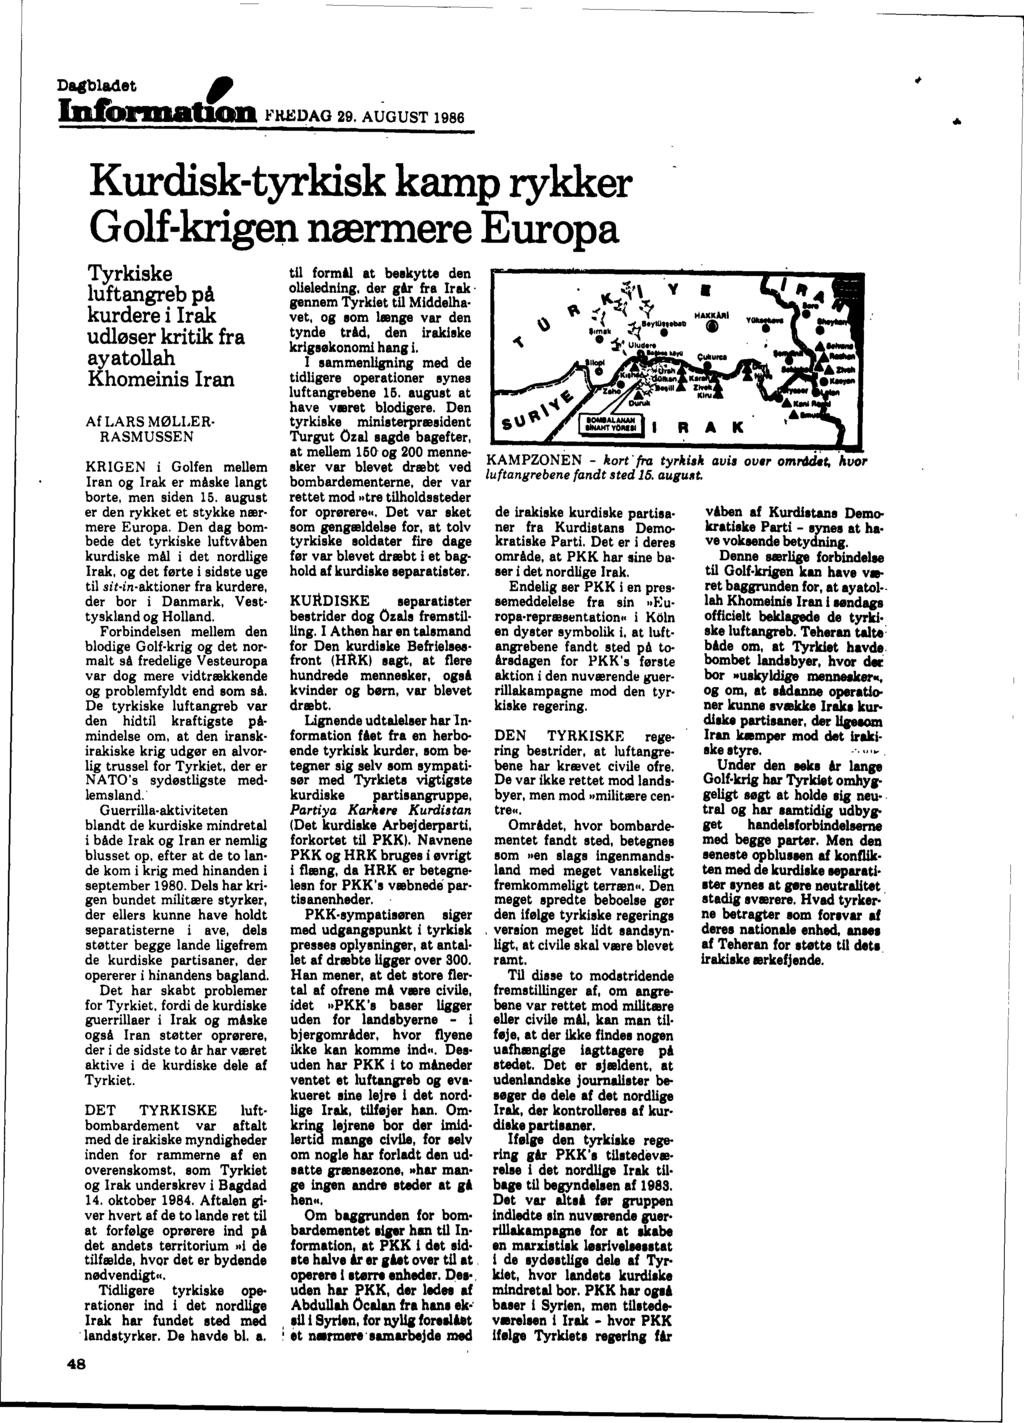 Dagbladet, 1DI00000tioD FH.EDAO 29. AUGUST 1986.